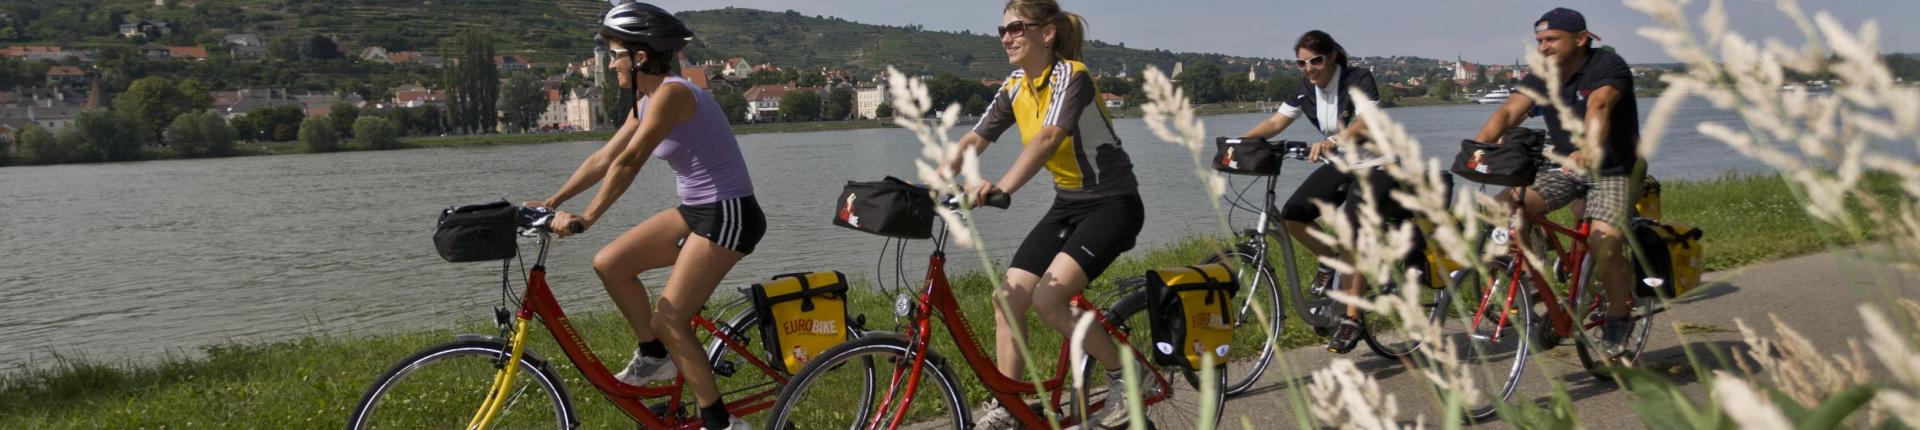 טיול אופניים לאורך הדנובה ב-5 ימים מלינץ לוינה